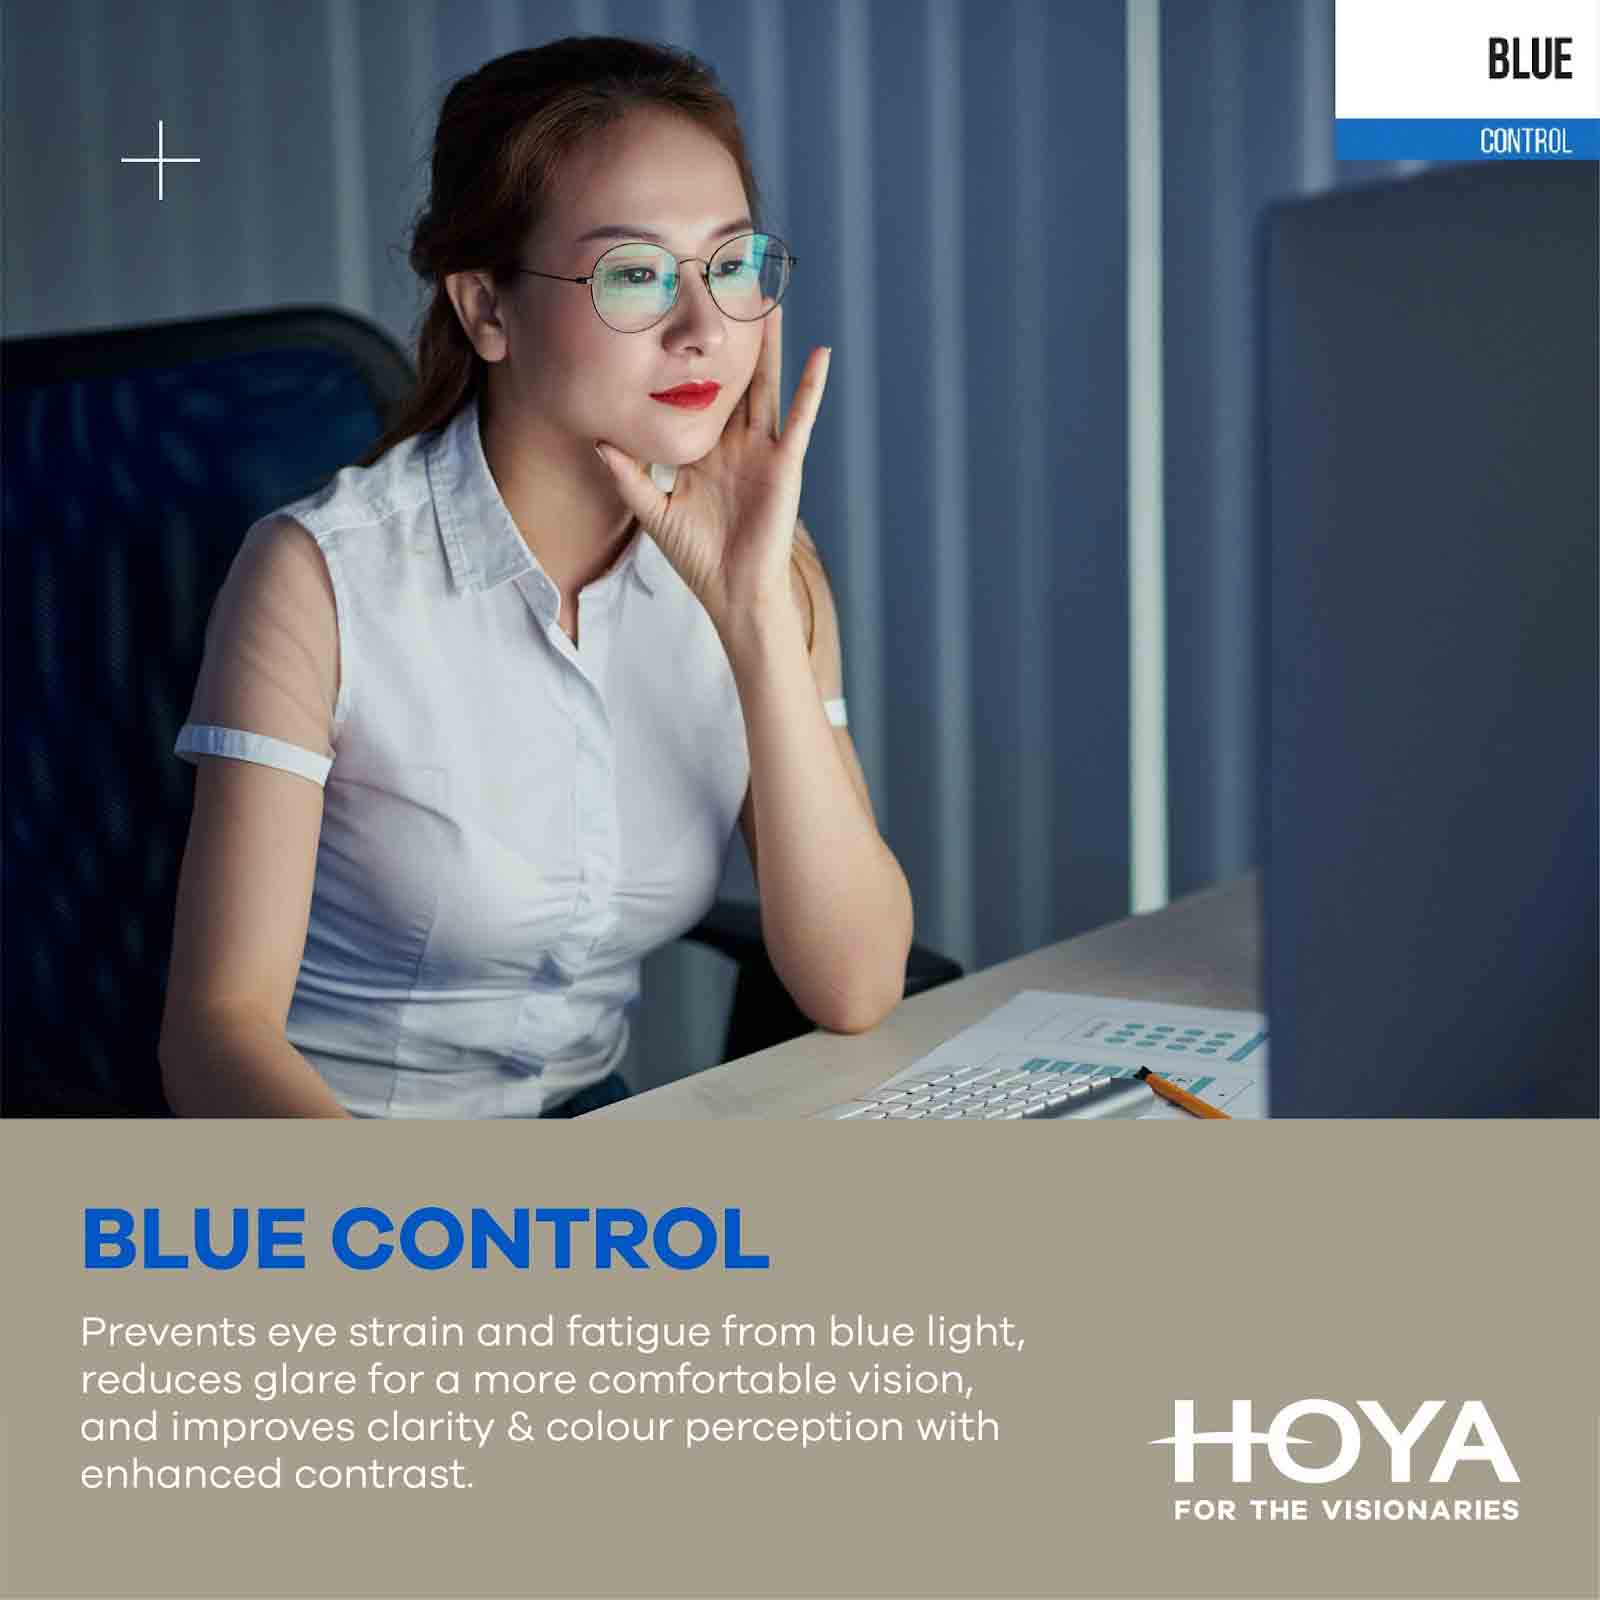 Tròng Kính Chống Bể Phoenix Nulux Full Control Hoya 1.53